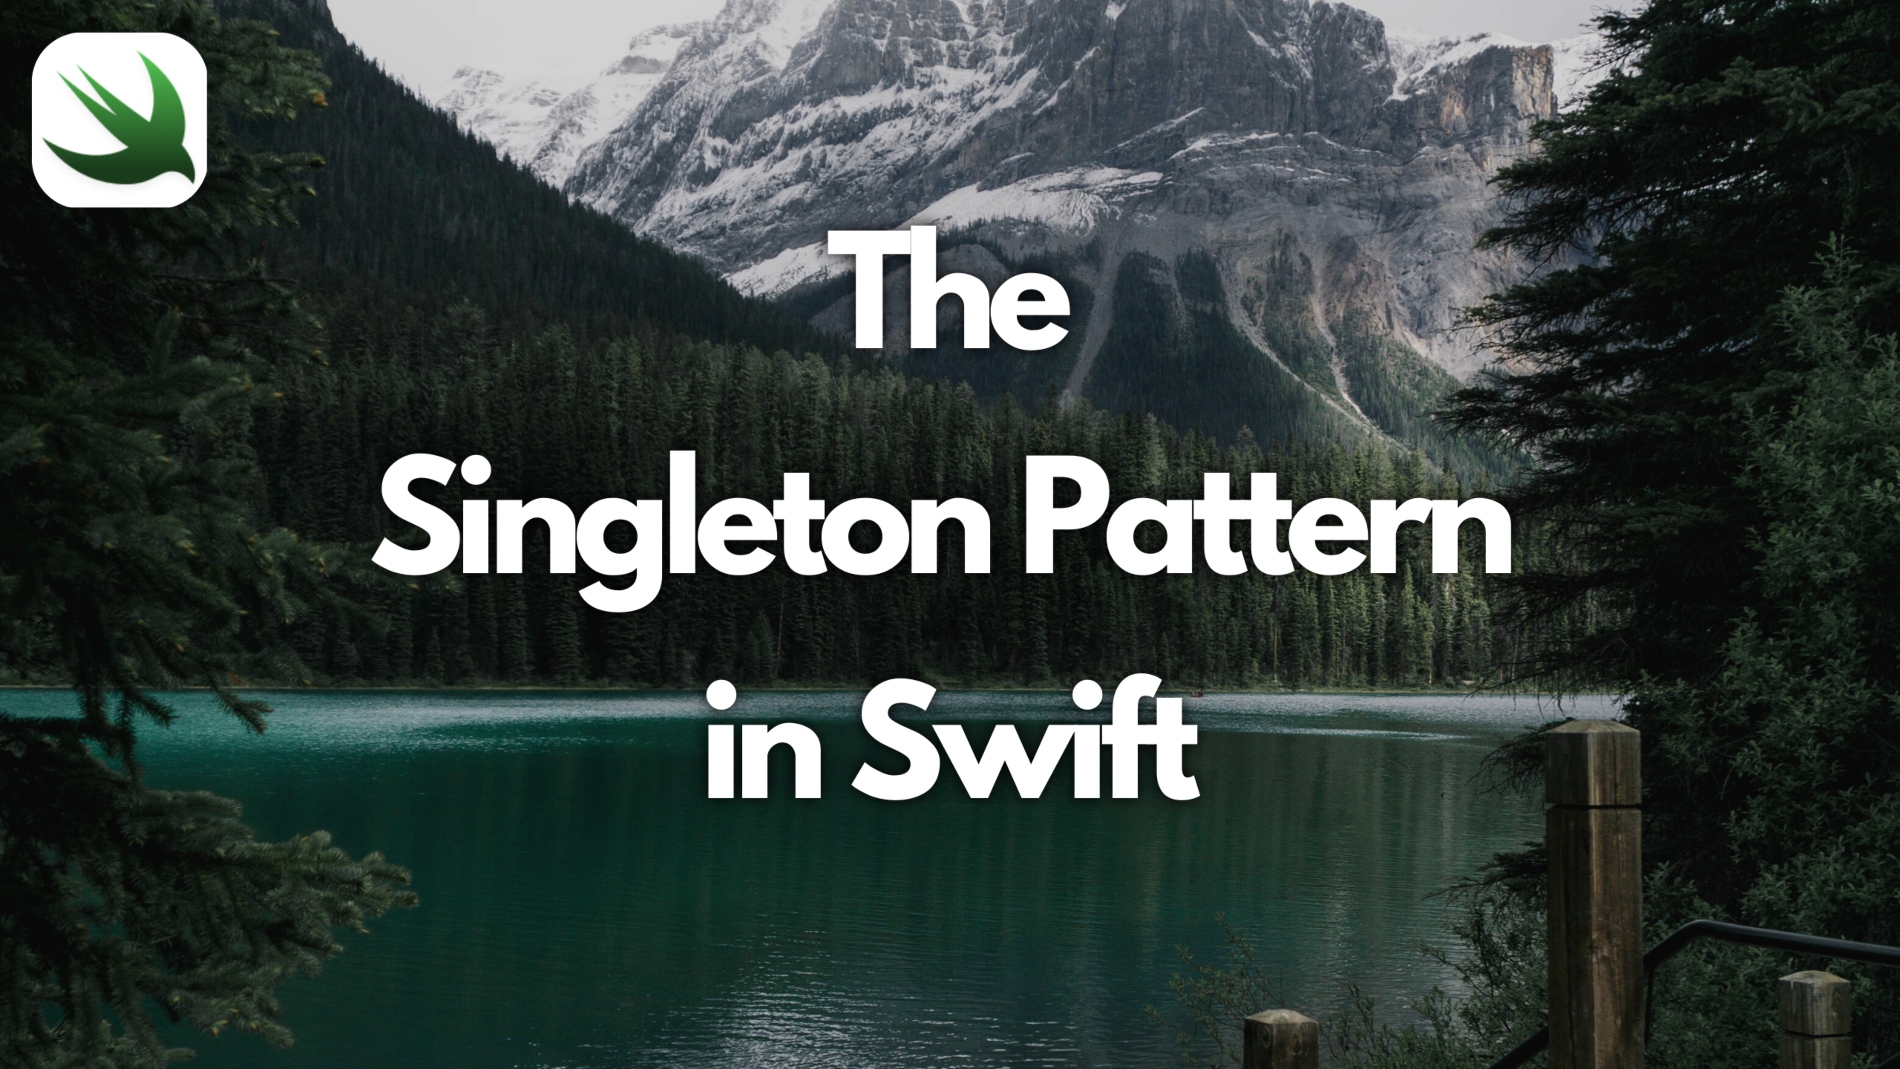 The Singleton Pattern in Swift